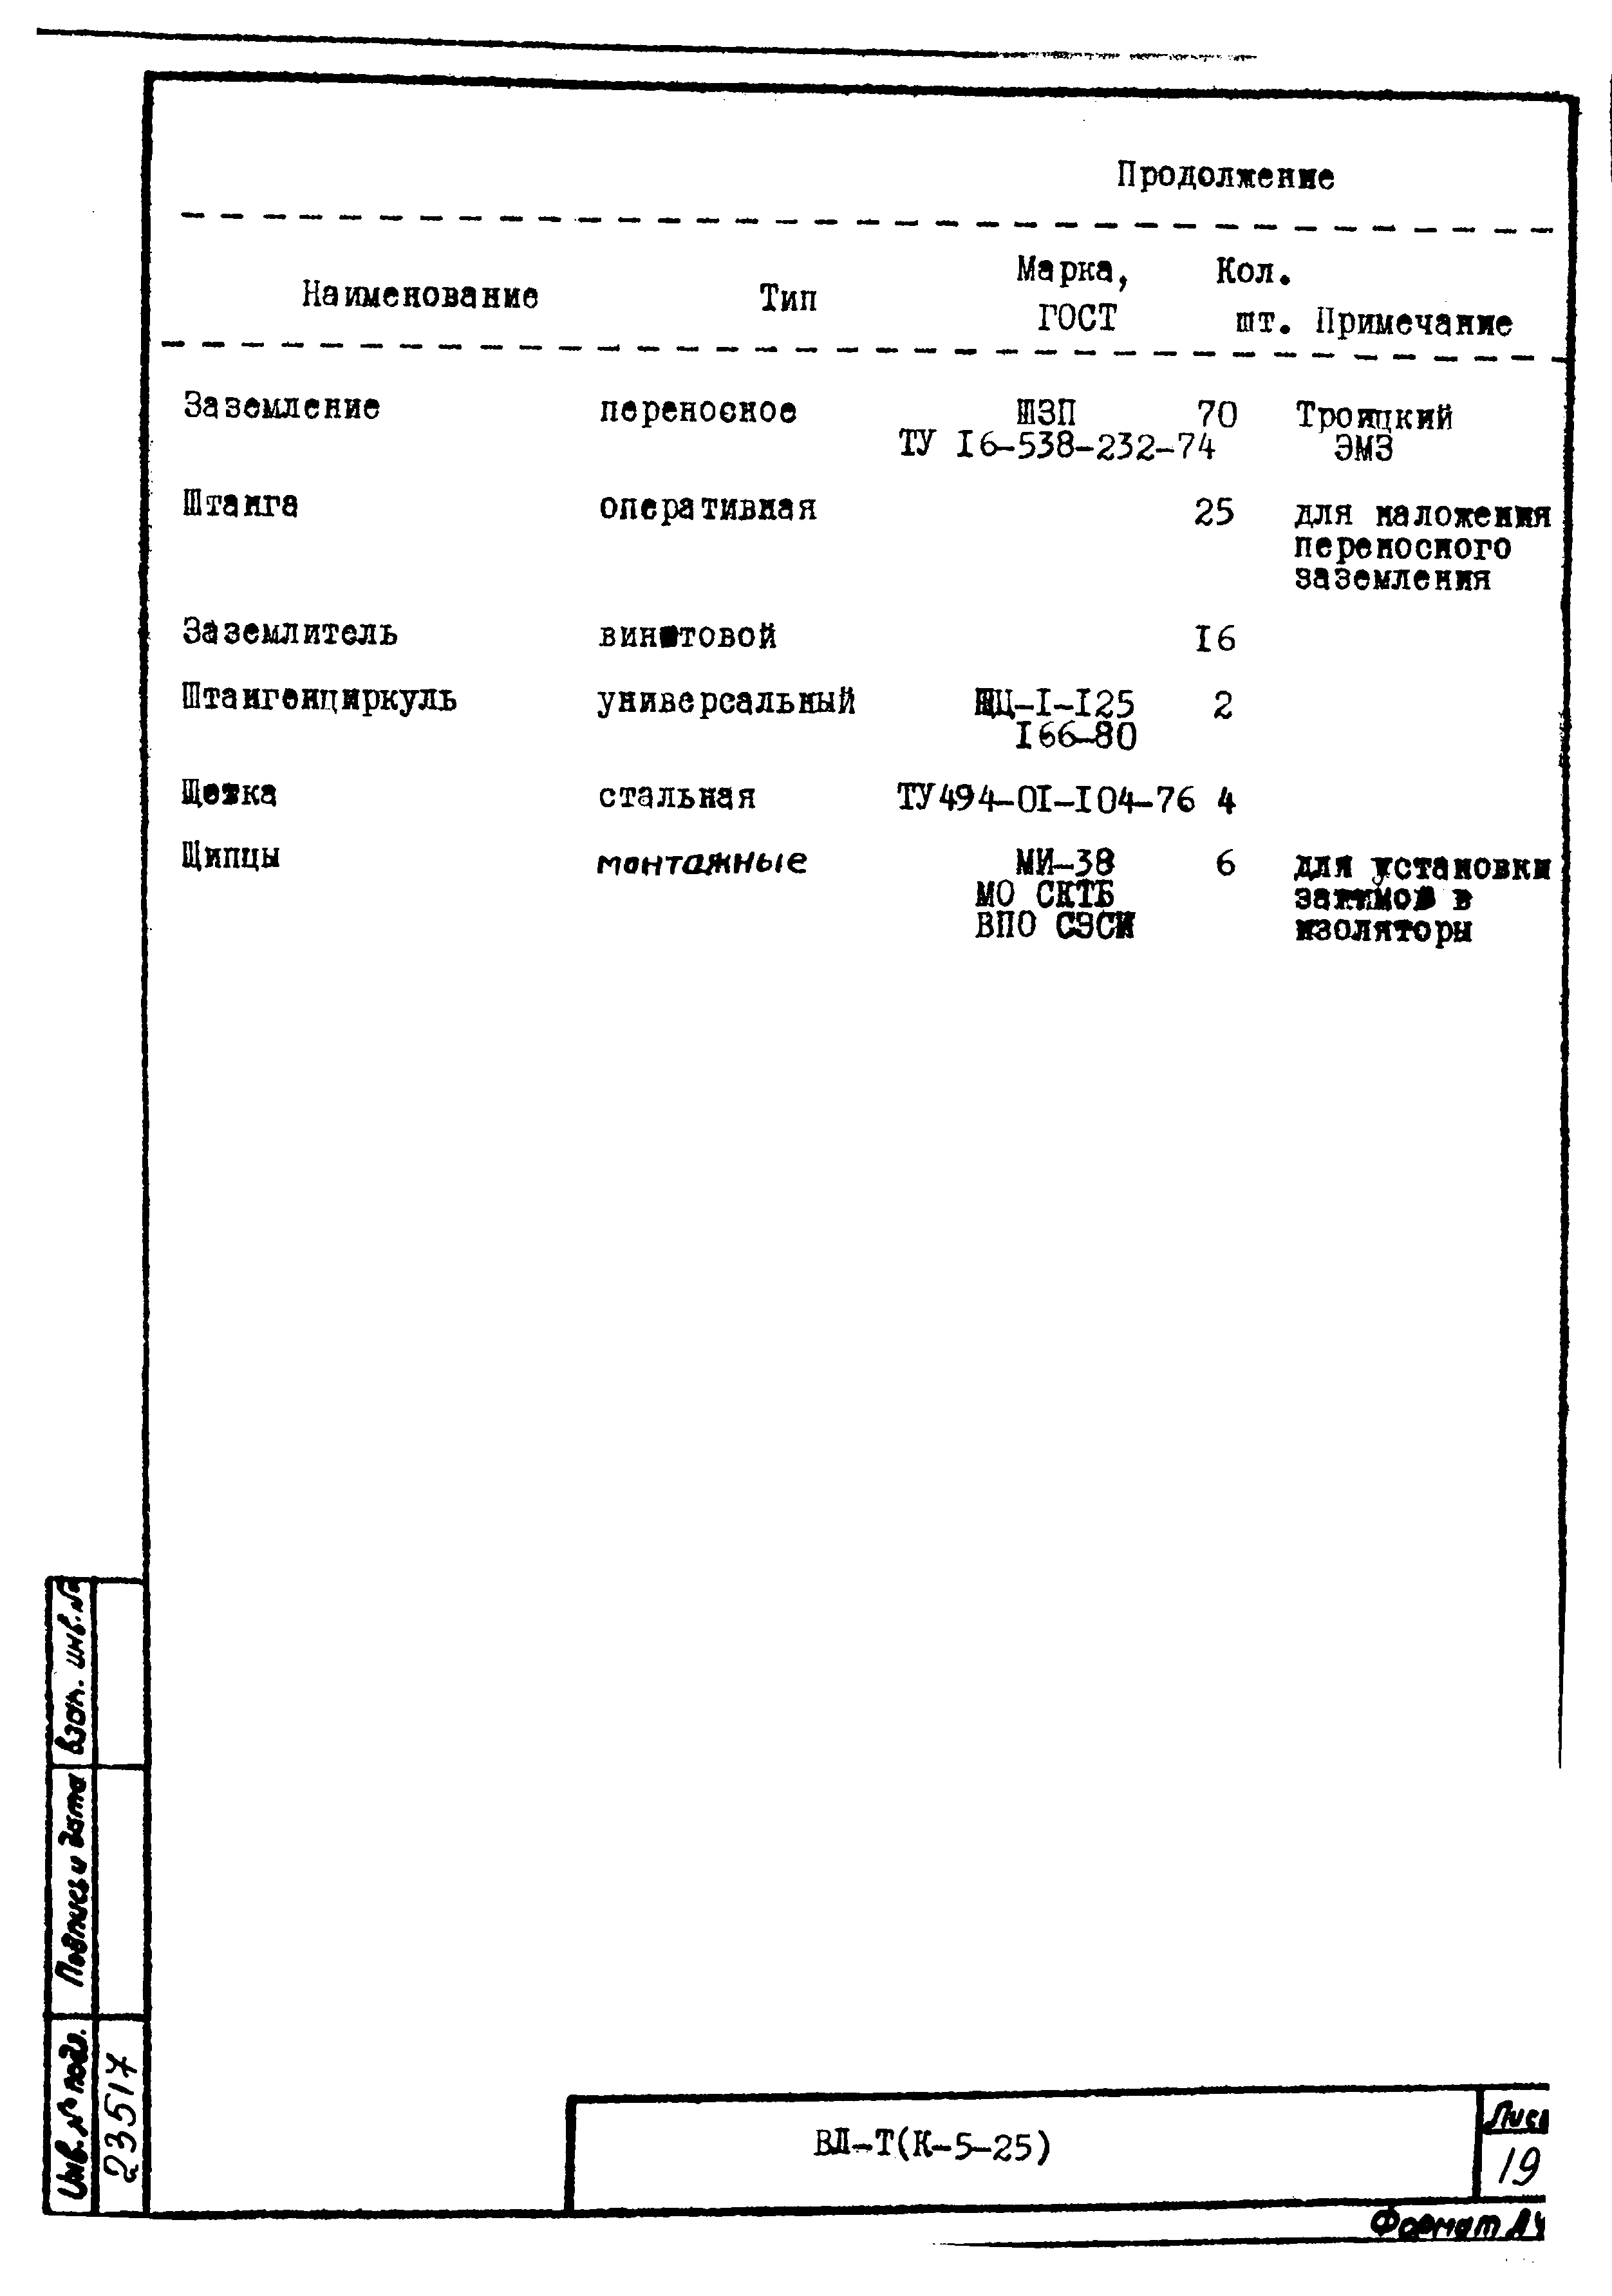 Технологическая карта К-5-25-10